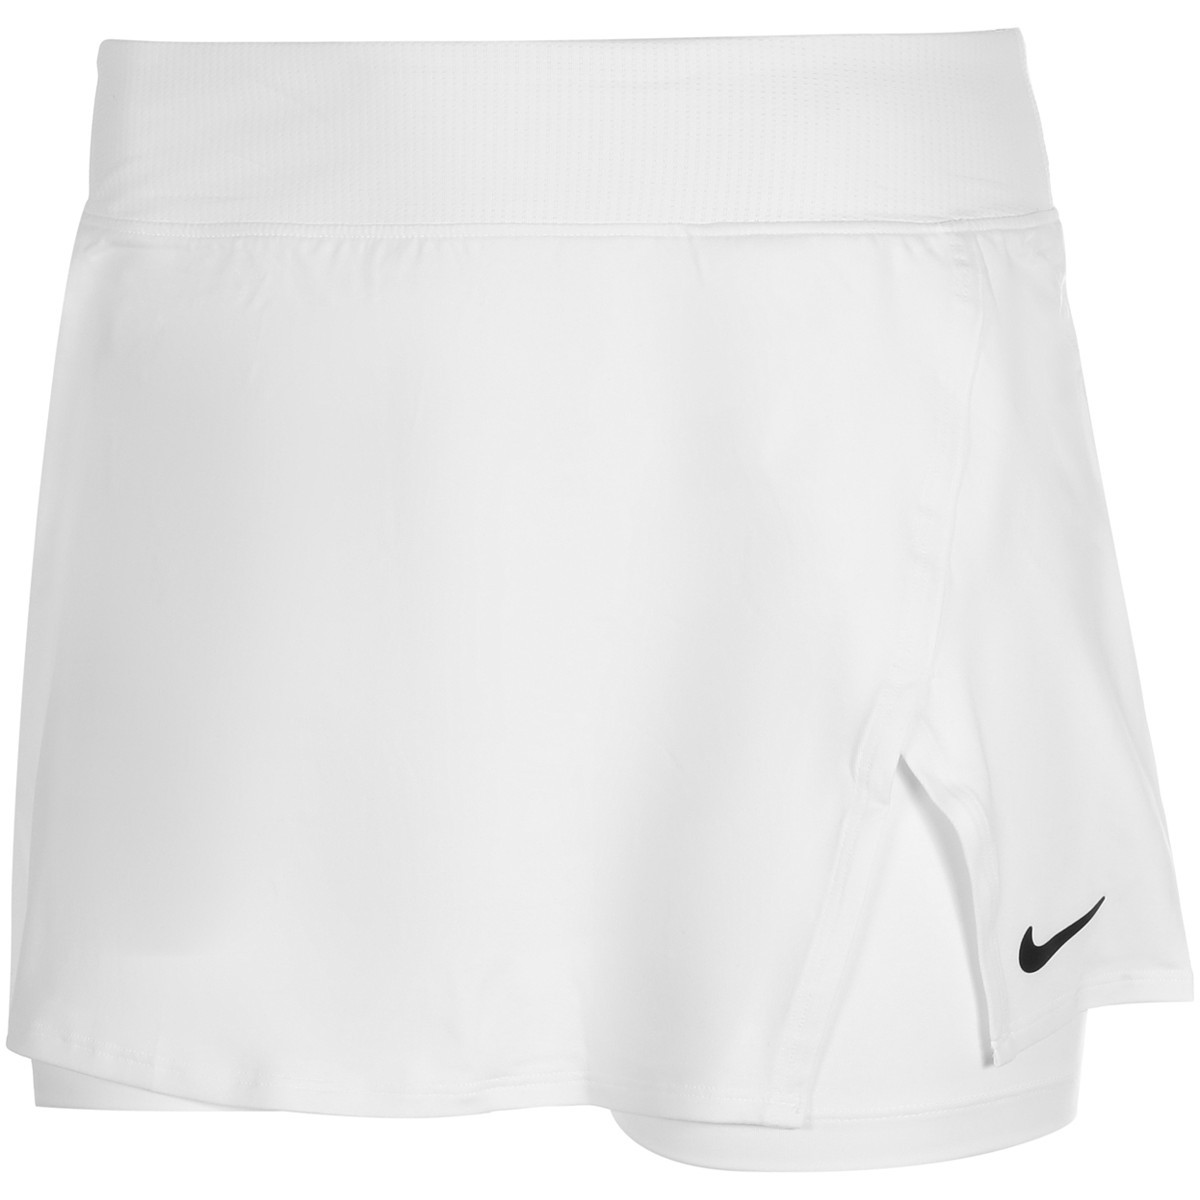 Теннисная юбка женская Nike Court Victory Tennis Skirt white/black